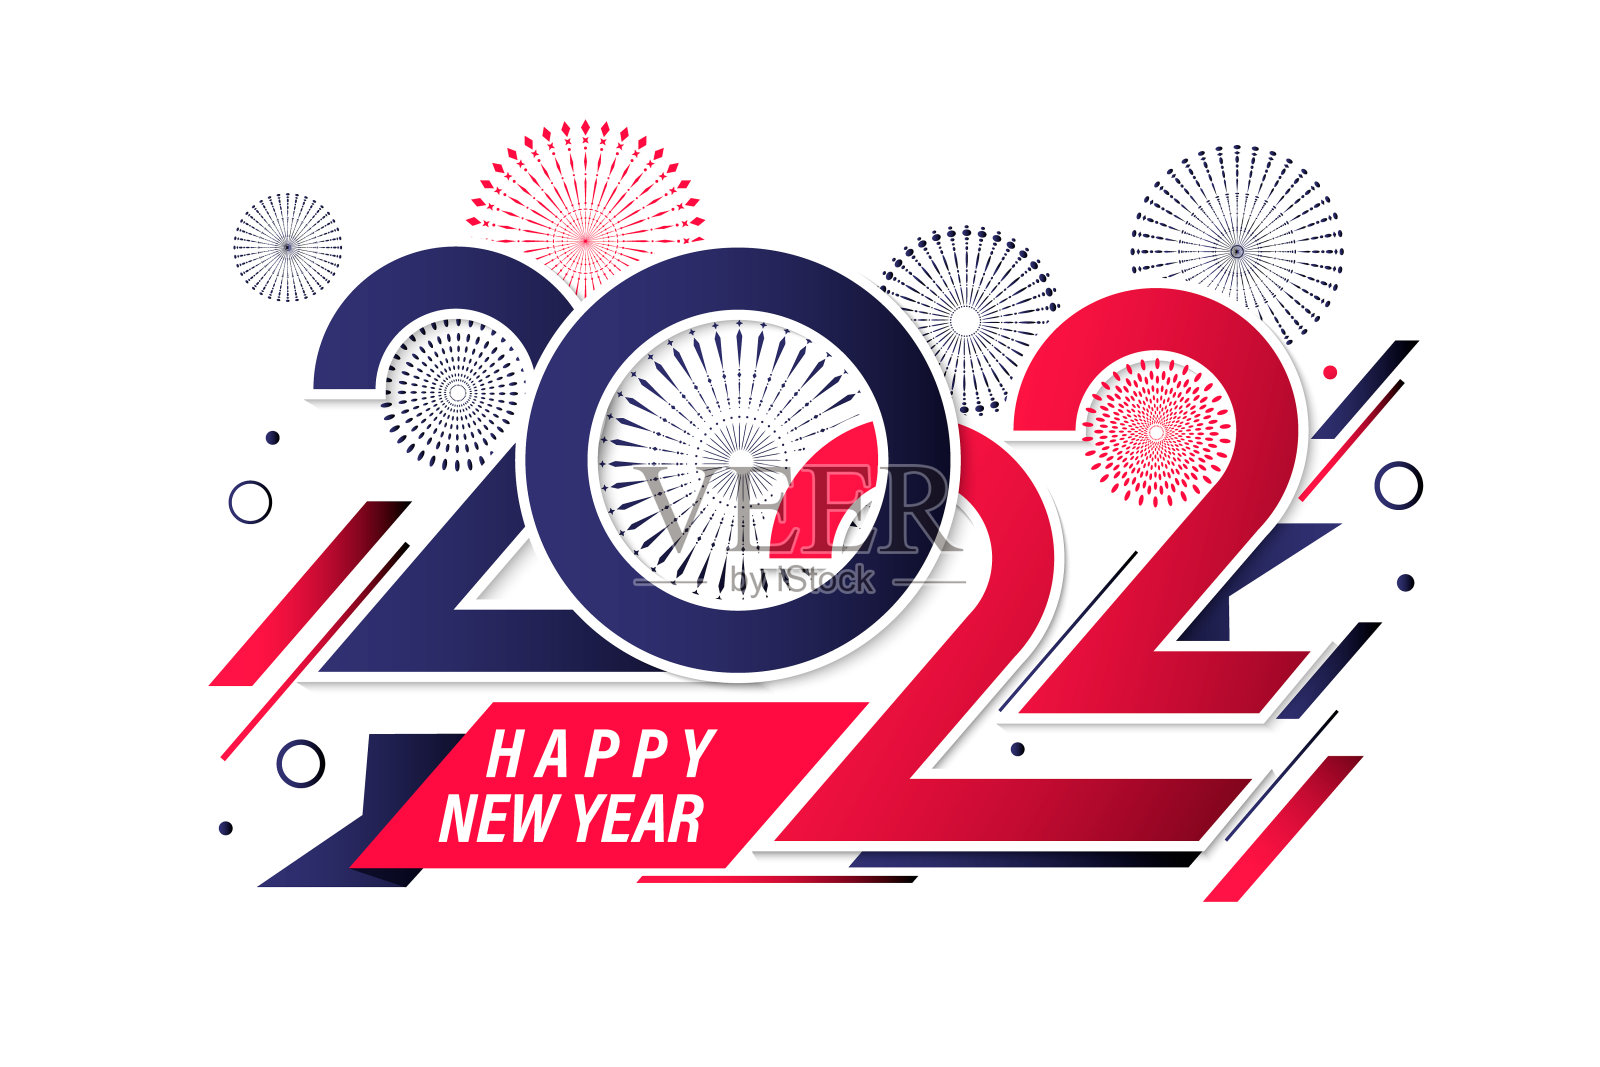 新年快乐2022封面与现代几何抽象背景在复古风格。2022年新年贺卡横幅设计书法包括丰富多彩的形状。矢量图插画图片素材